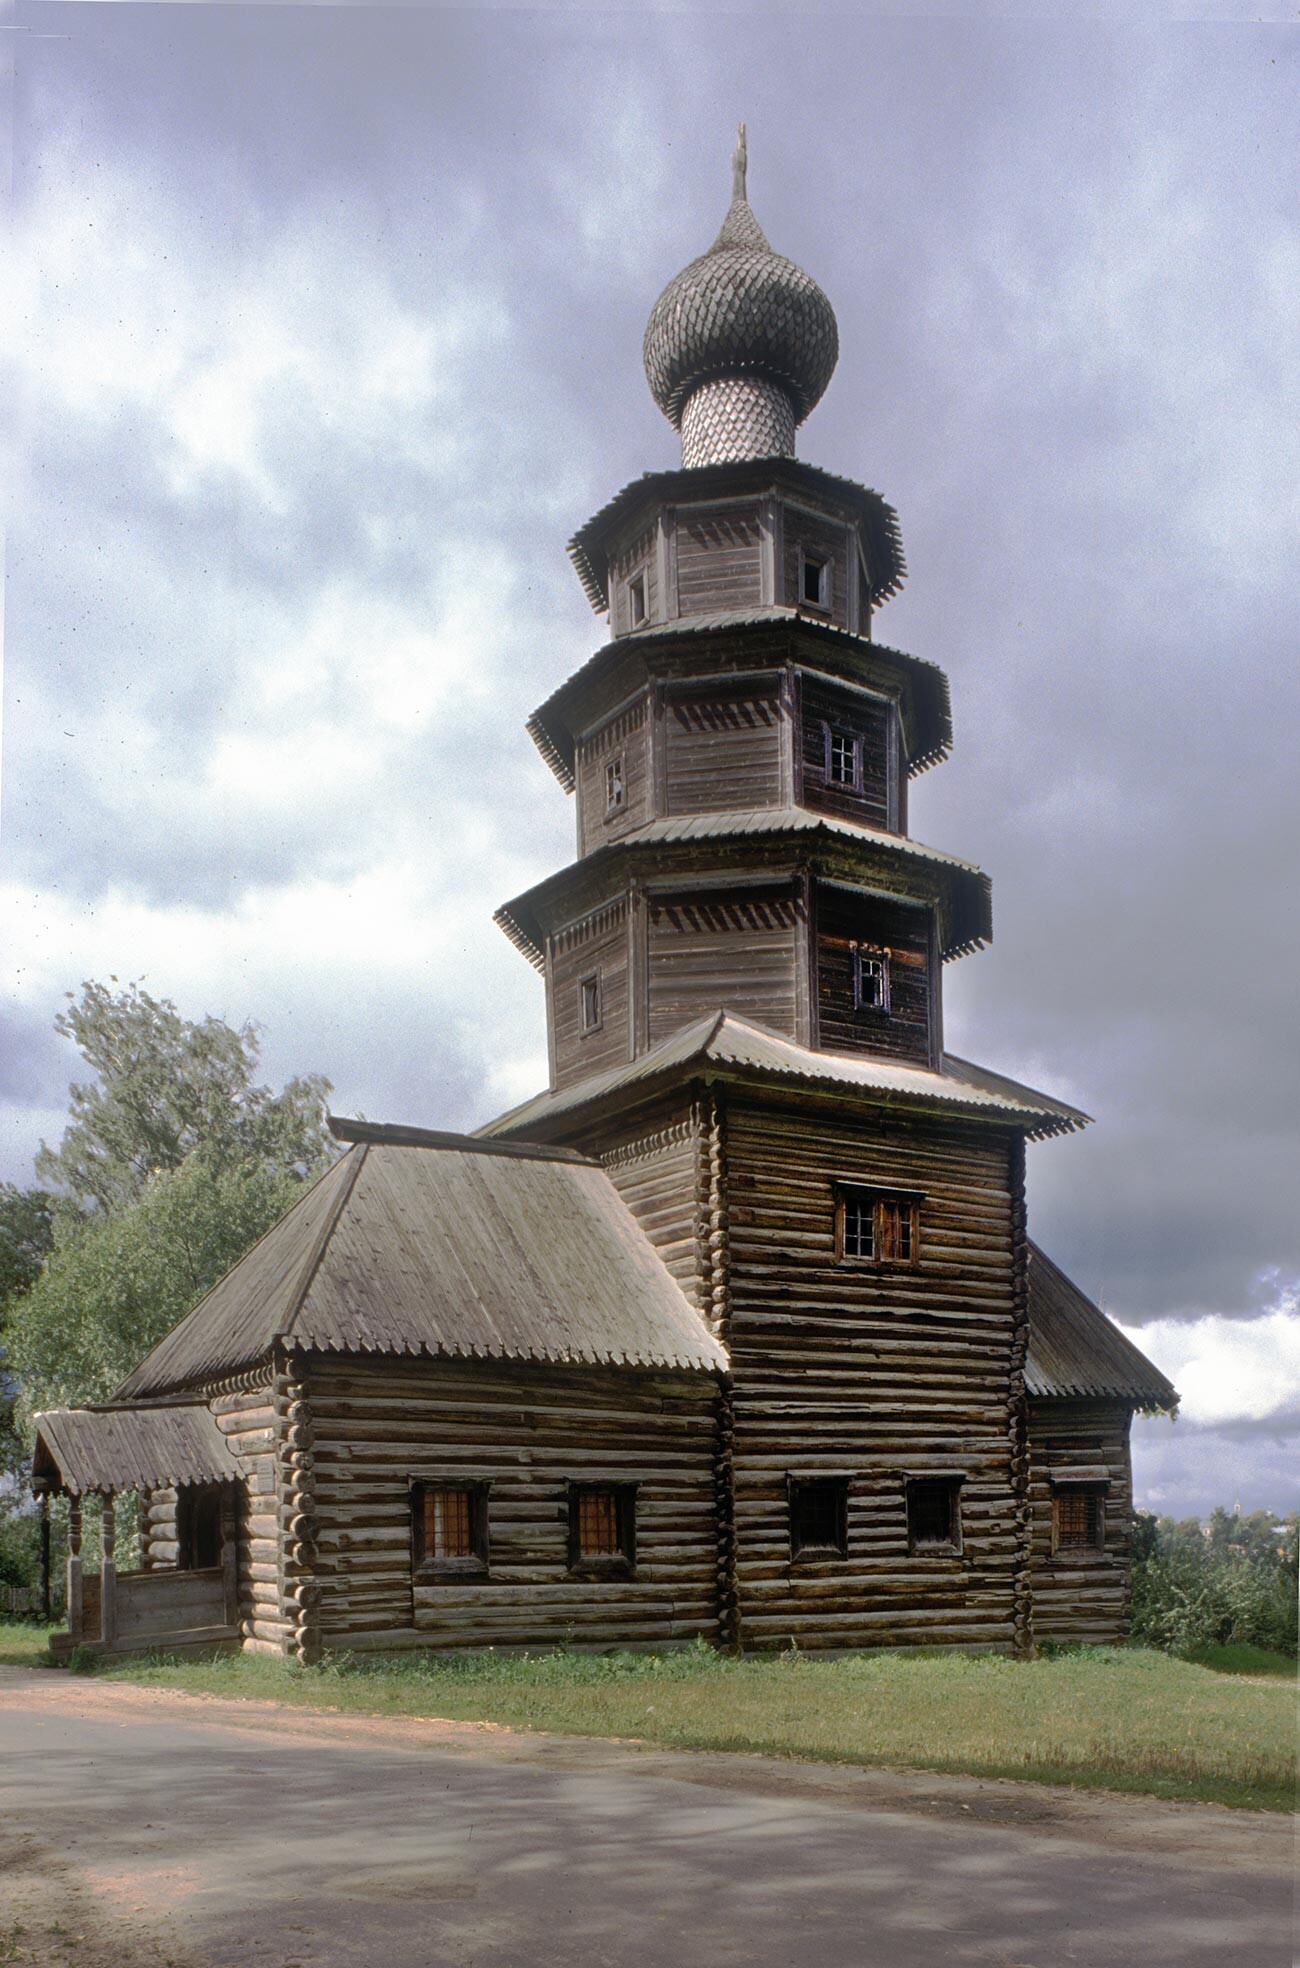 Torzhok. Chiesa dell'Icona di Tikhvin, vista sud-ovest. 13 agosto 1995

